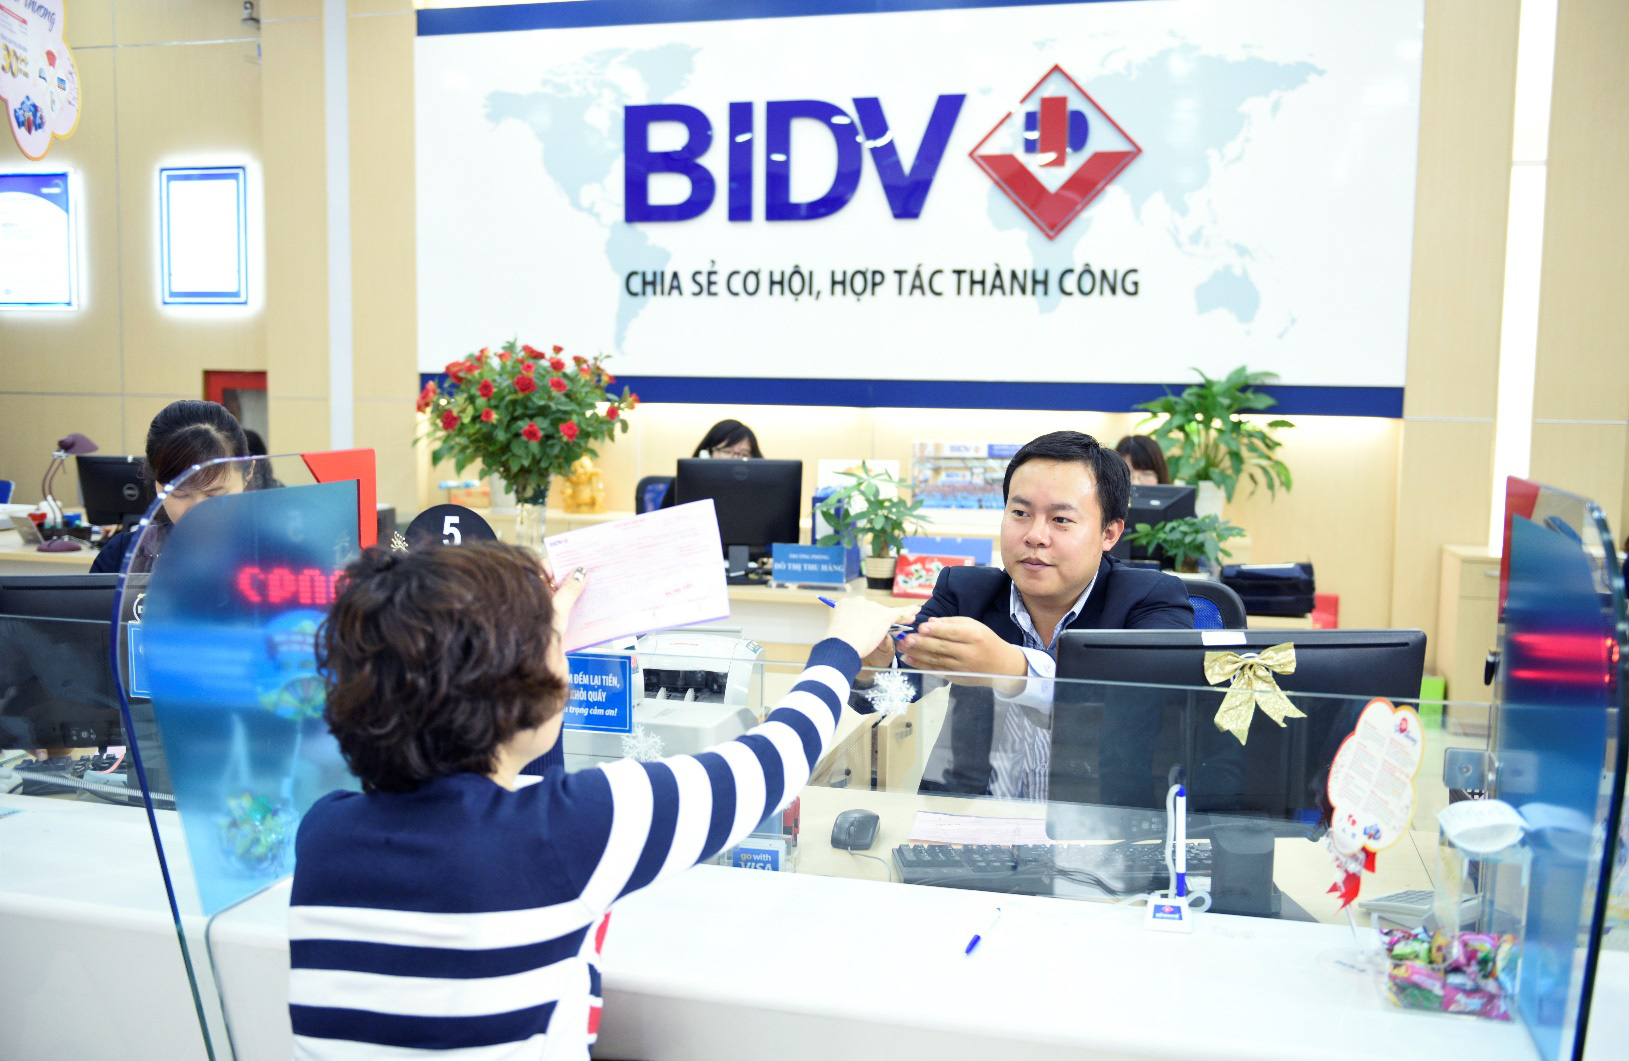 BIDV ưu đãi lớn dành cho khách hàng nữ nhân dịp 8-3 - Ảnh 1.